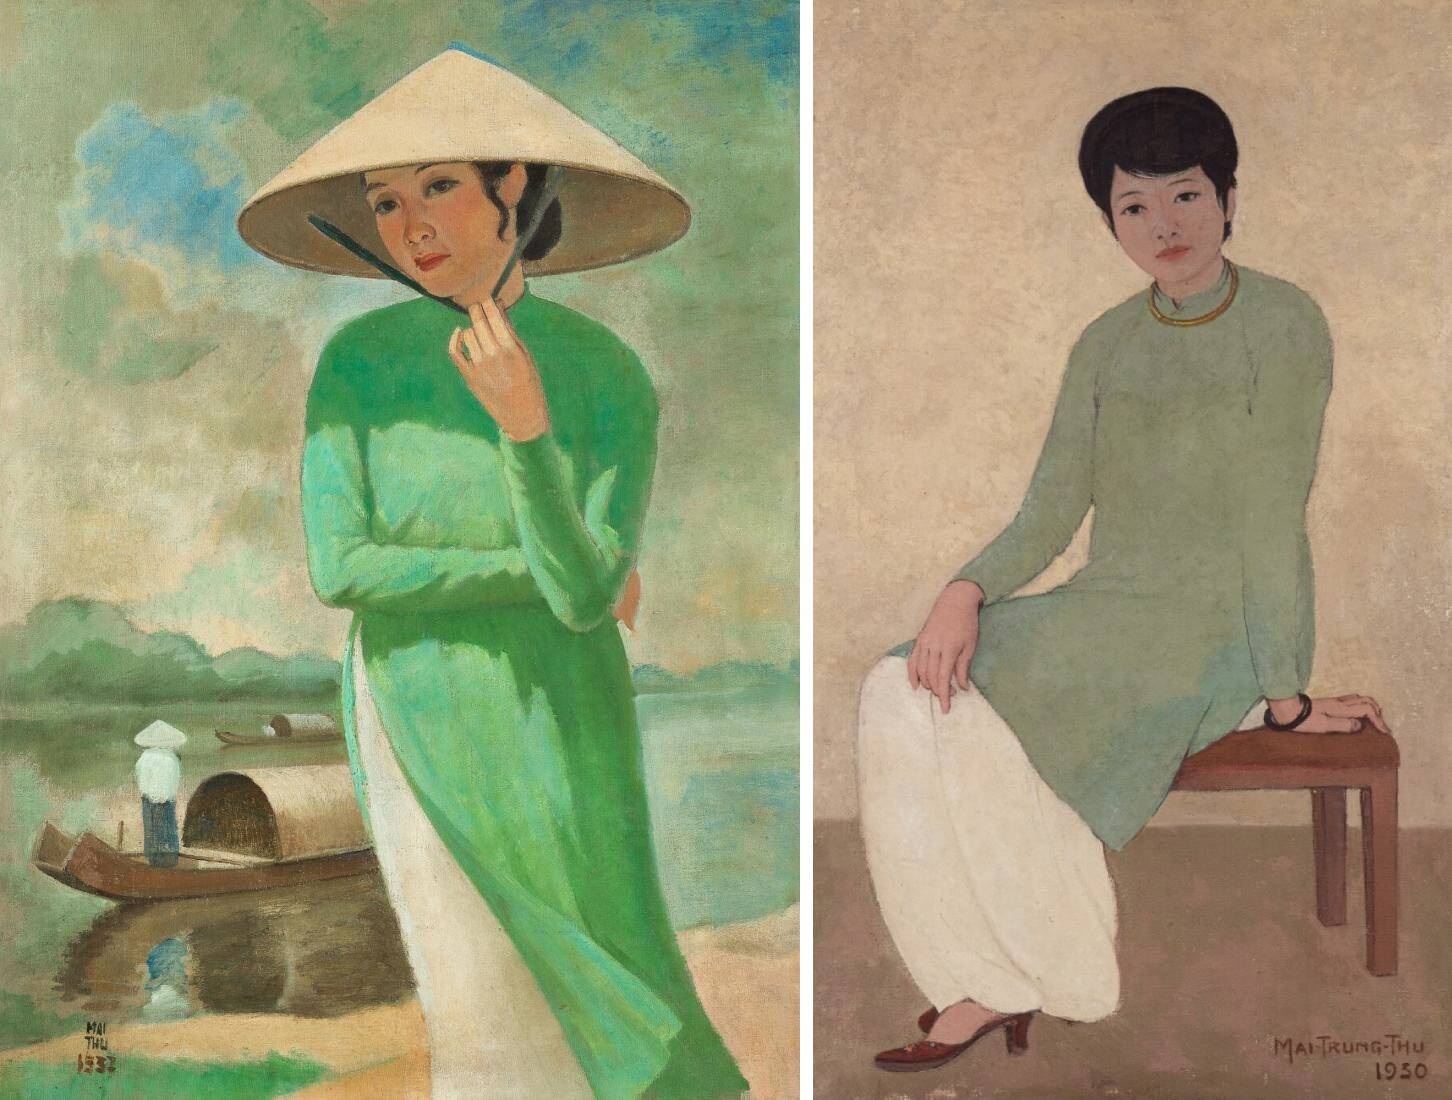 Hội họa Việt - là nghệ thuật truyền thống, thể hiện nét đẹp và sự tinh tế của con người Việt Nam. Với đa dạng về chủ đề, màu sắc và kỹ thuật, hội họa Việt tạo ra một cảm giác mạnh mẽ và độc đáo cho người xem. Hãy xem hình ảnh để tìm hiểu về nghệ thuật đặc sắc này.